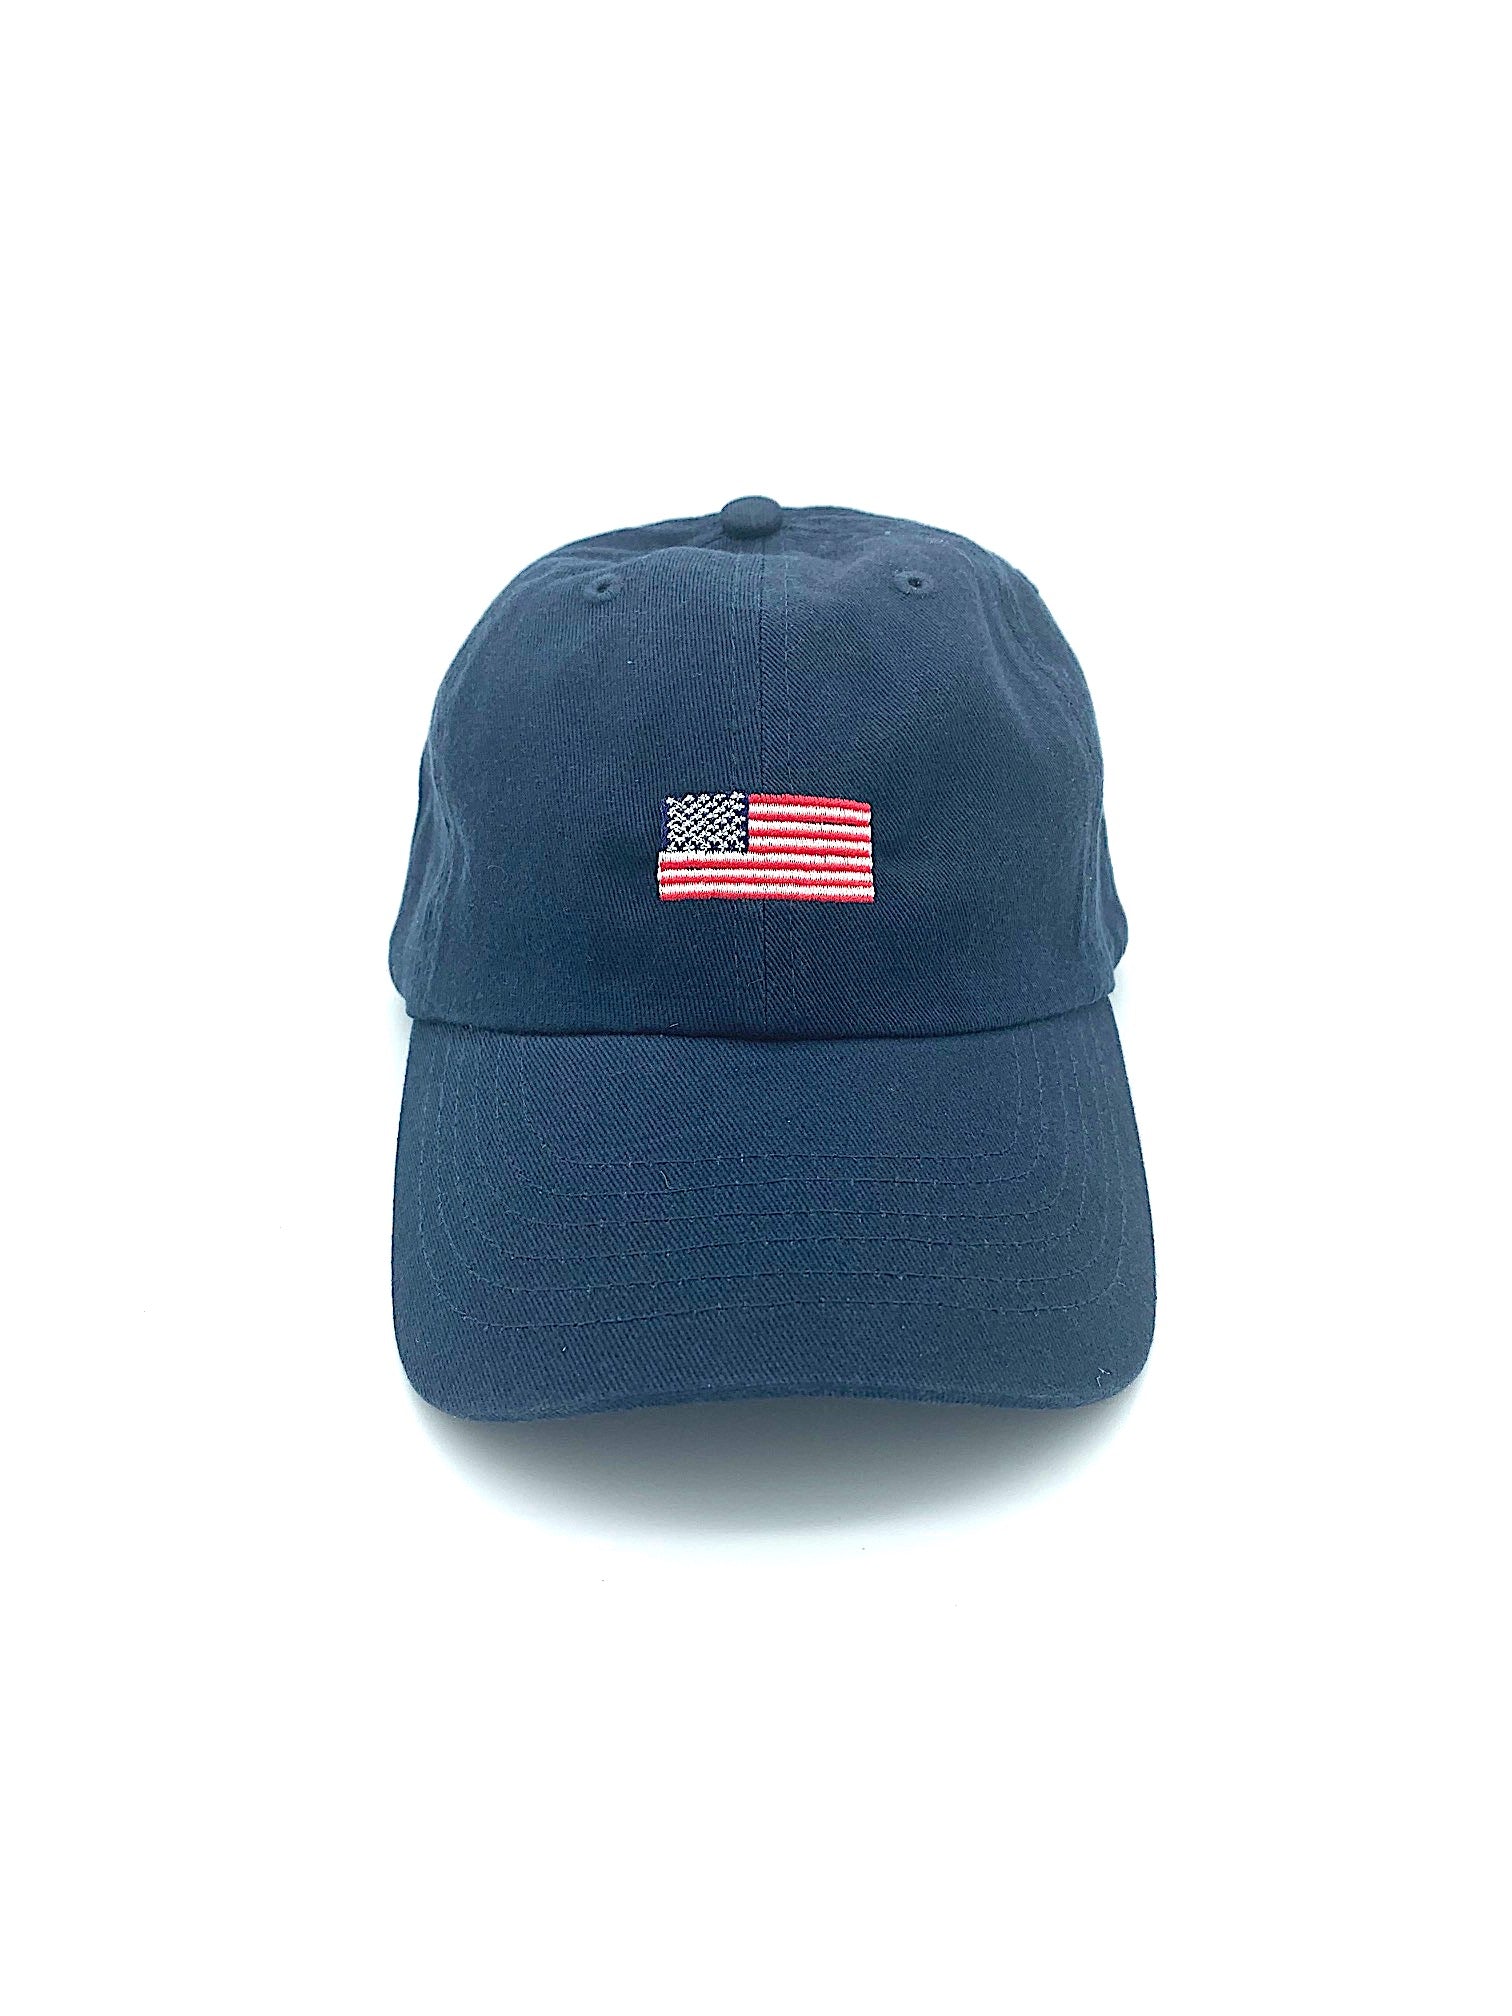 US Flag Dad Hat - Navy Blue